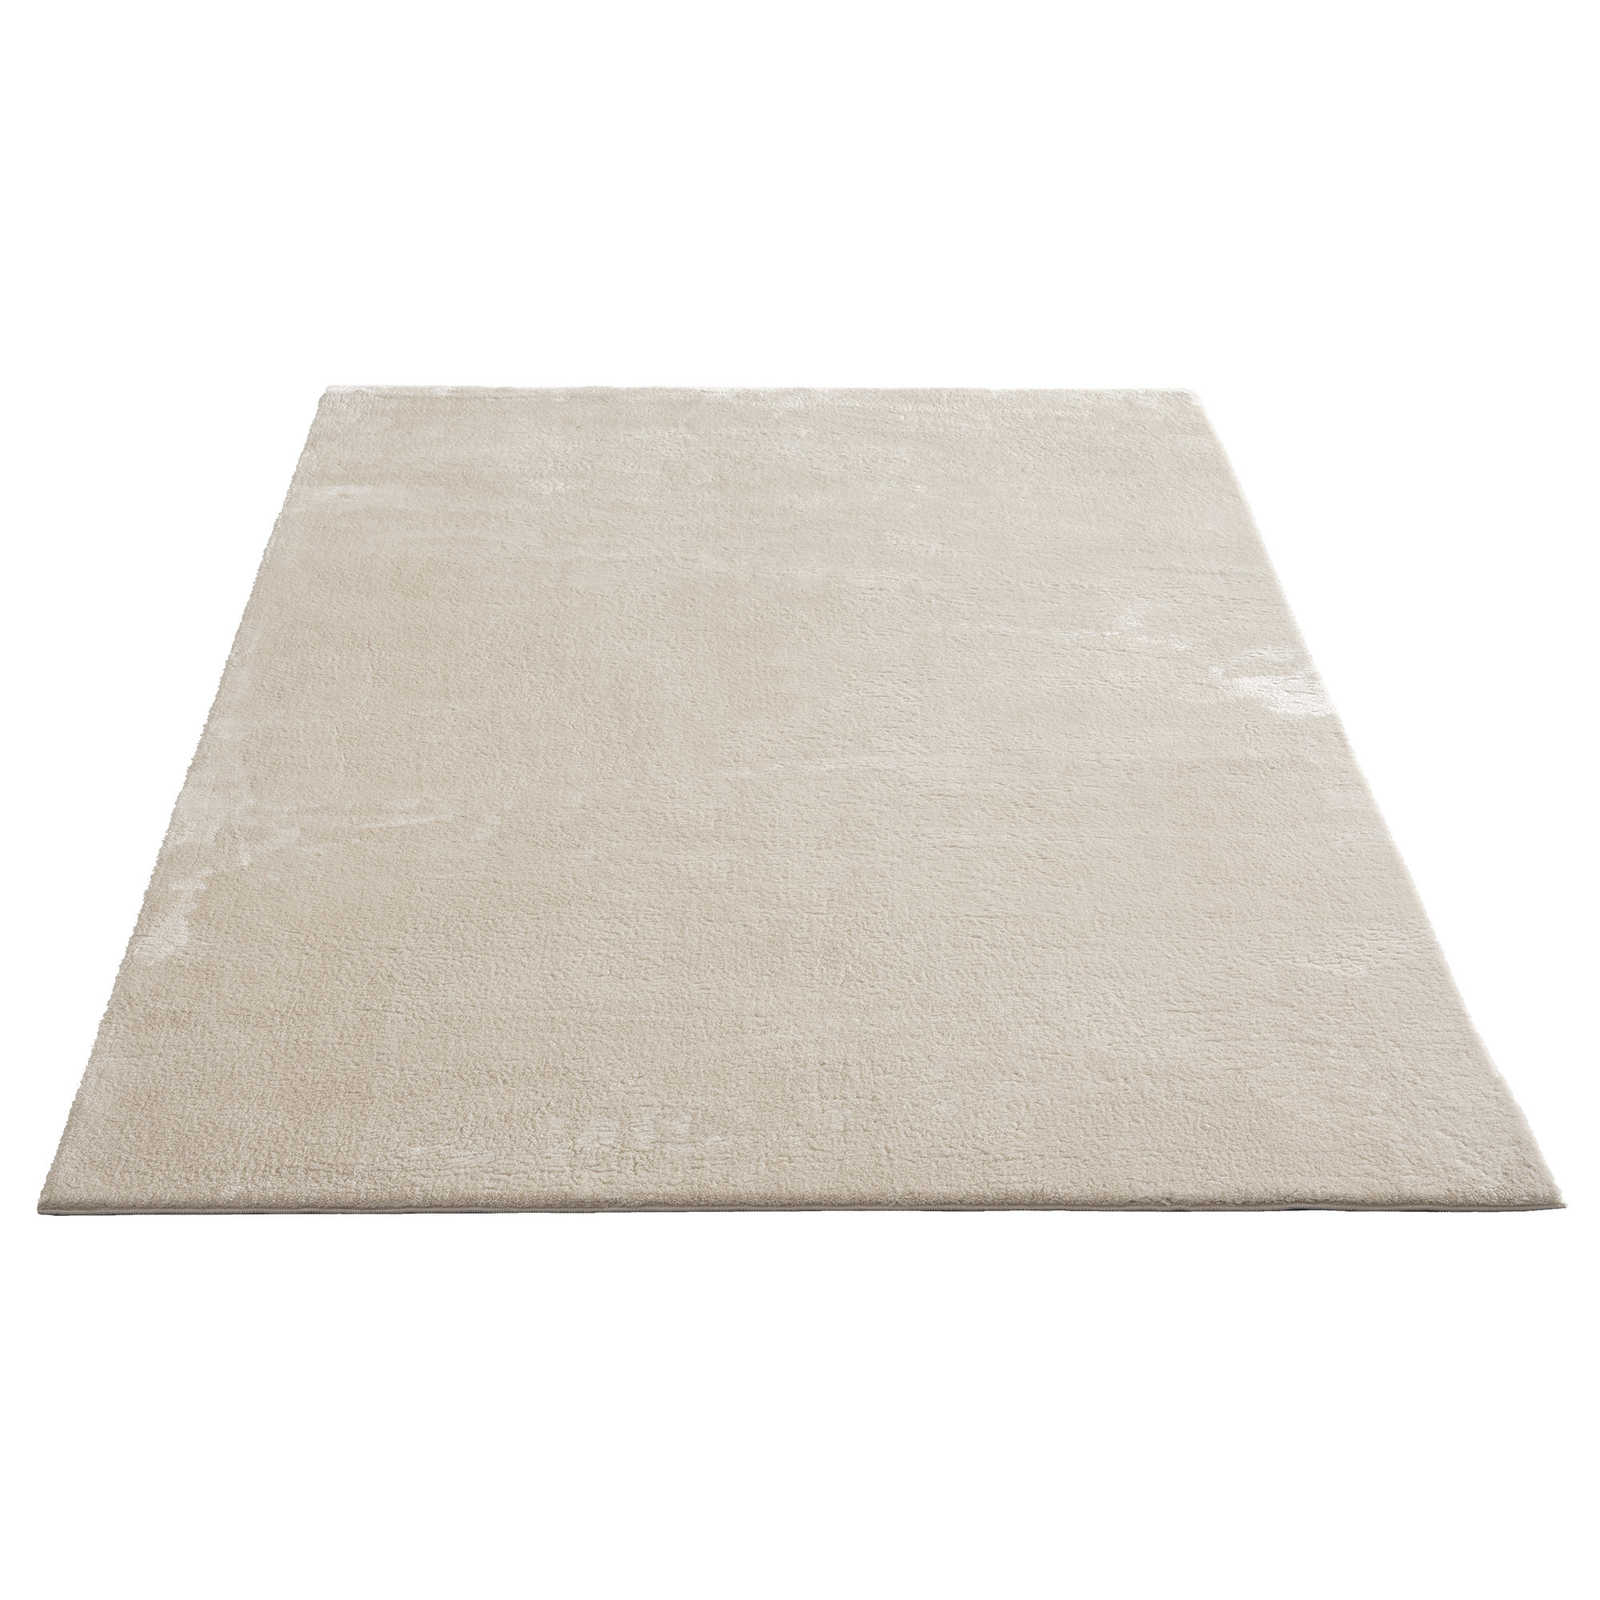 Soft high pile carpet in beige - 340 x 240 cm
